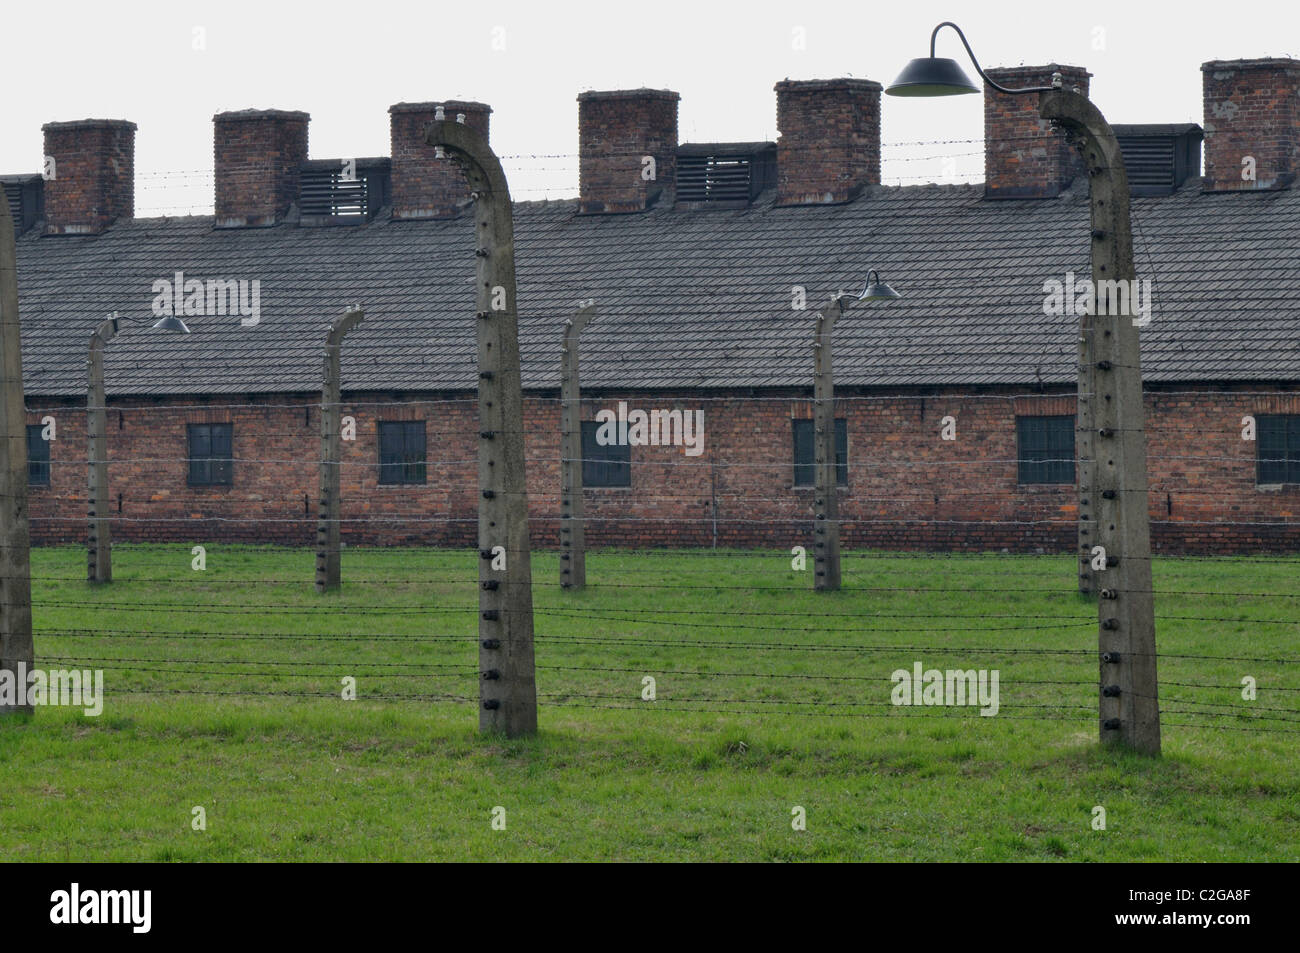 Caserma con recinti elettrici a Oświęcim - Brzezinka -Auschwitz II - Birkenau Campo di Concentramento Foto Stock